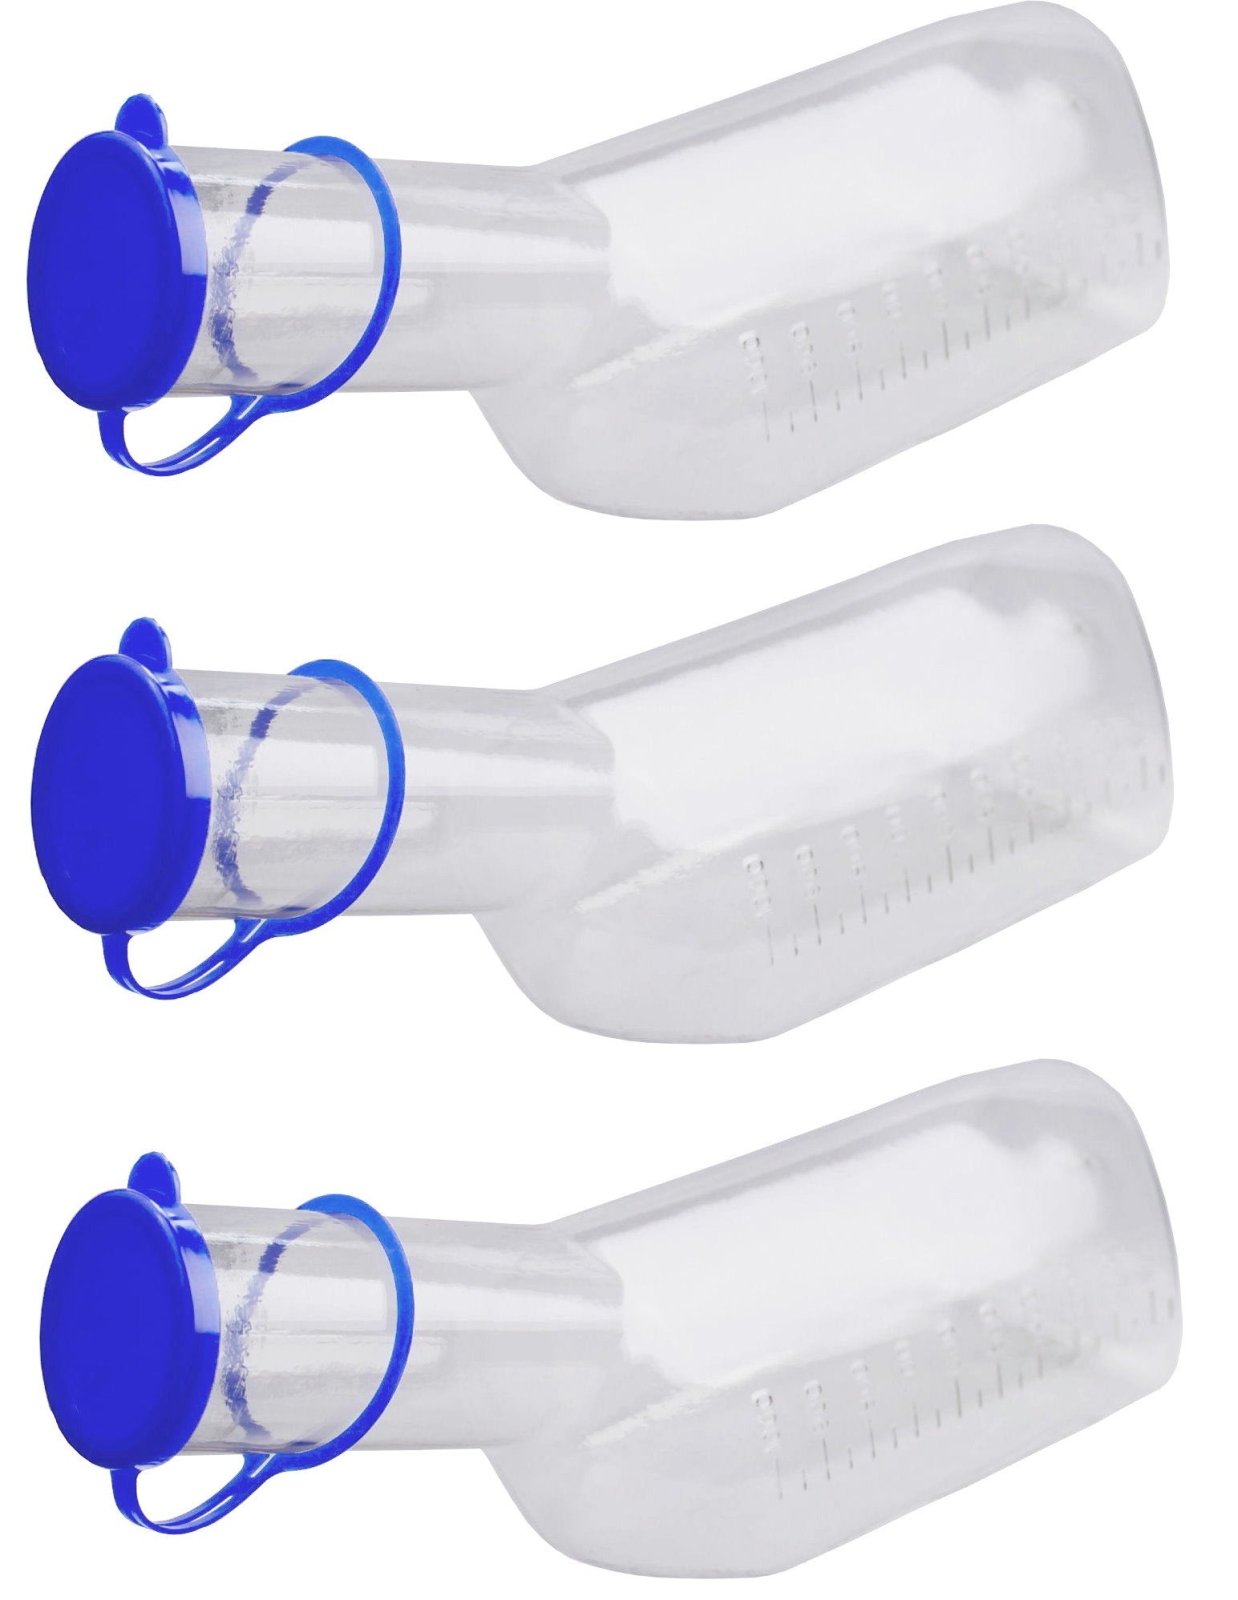 Medi-Inn Urinflasche PC 1000 ml für Männer klarsichtig